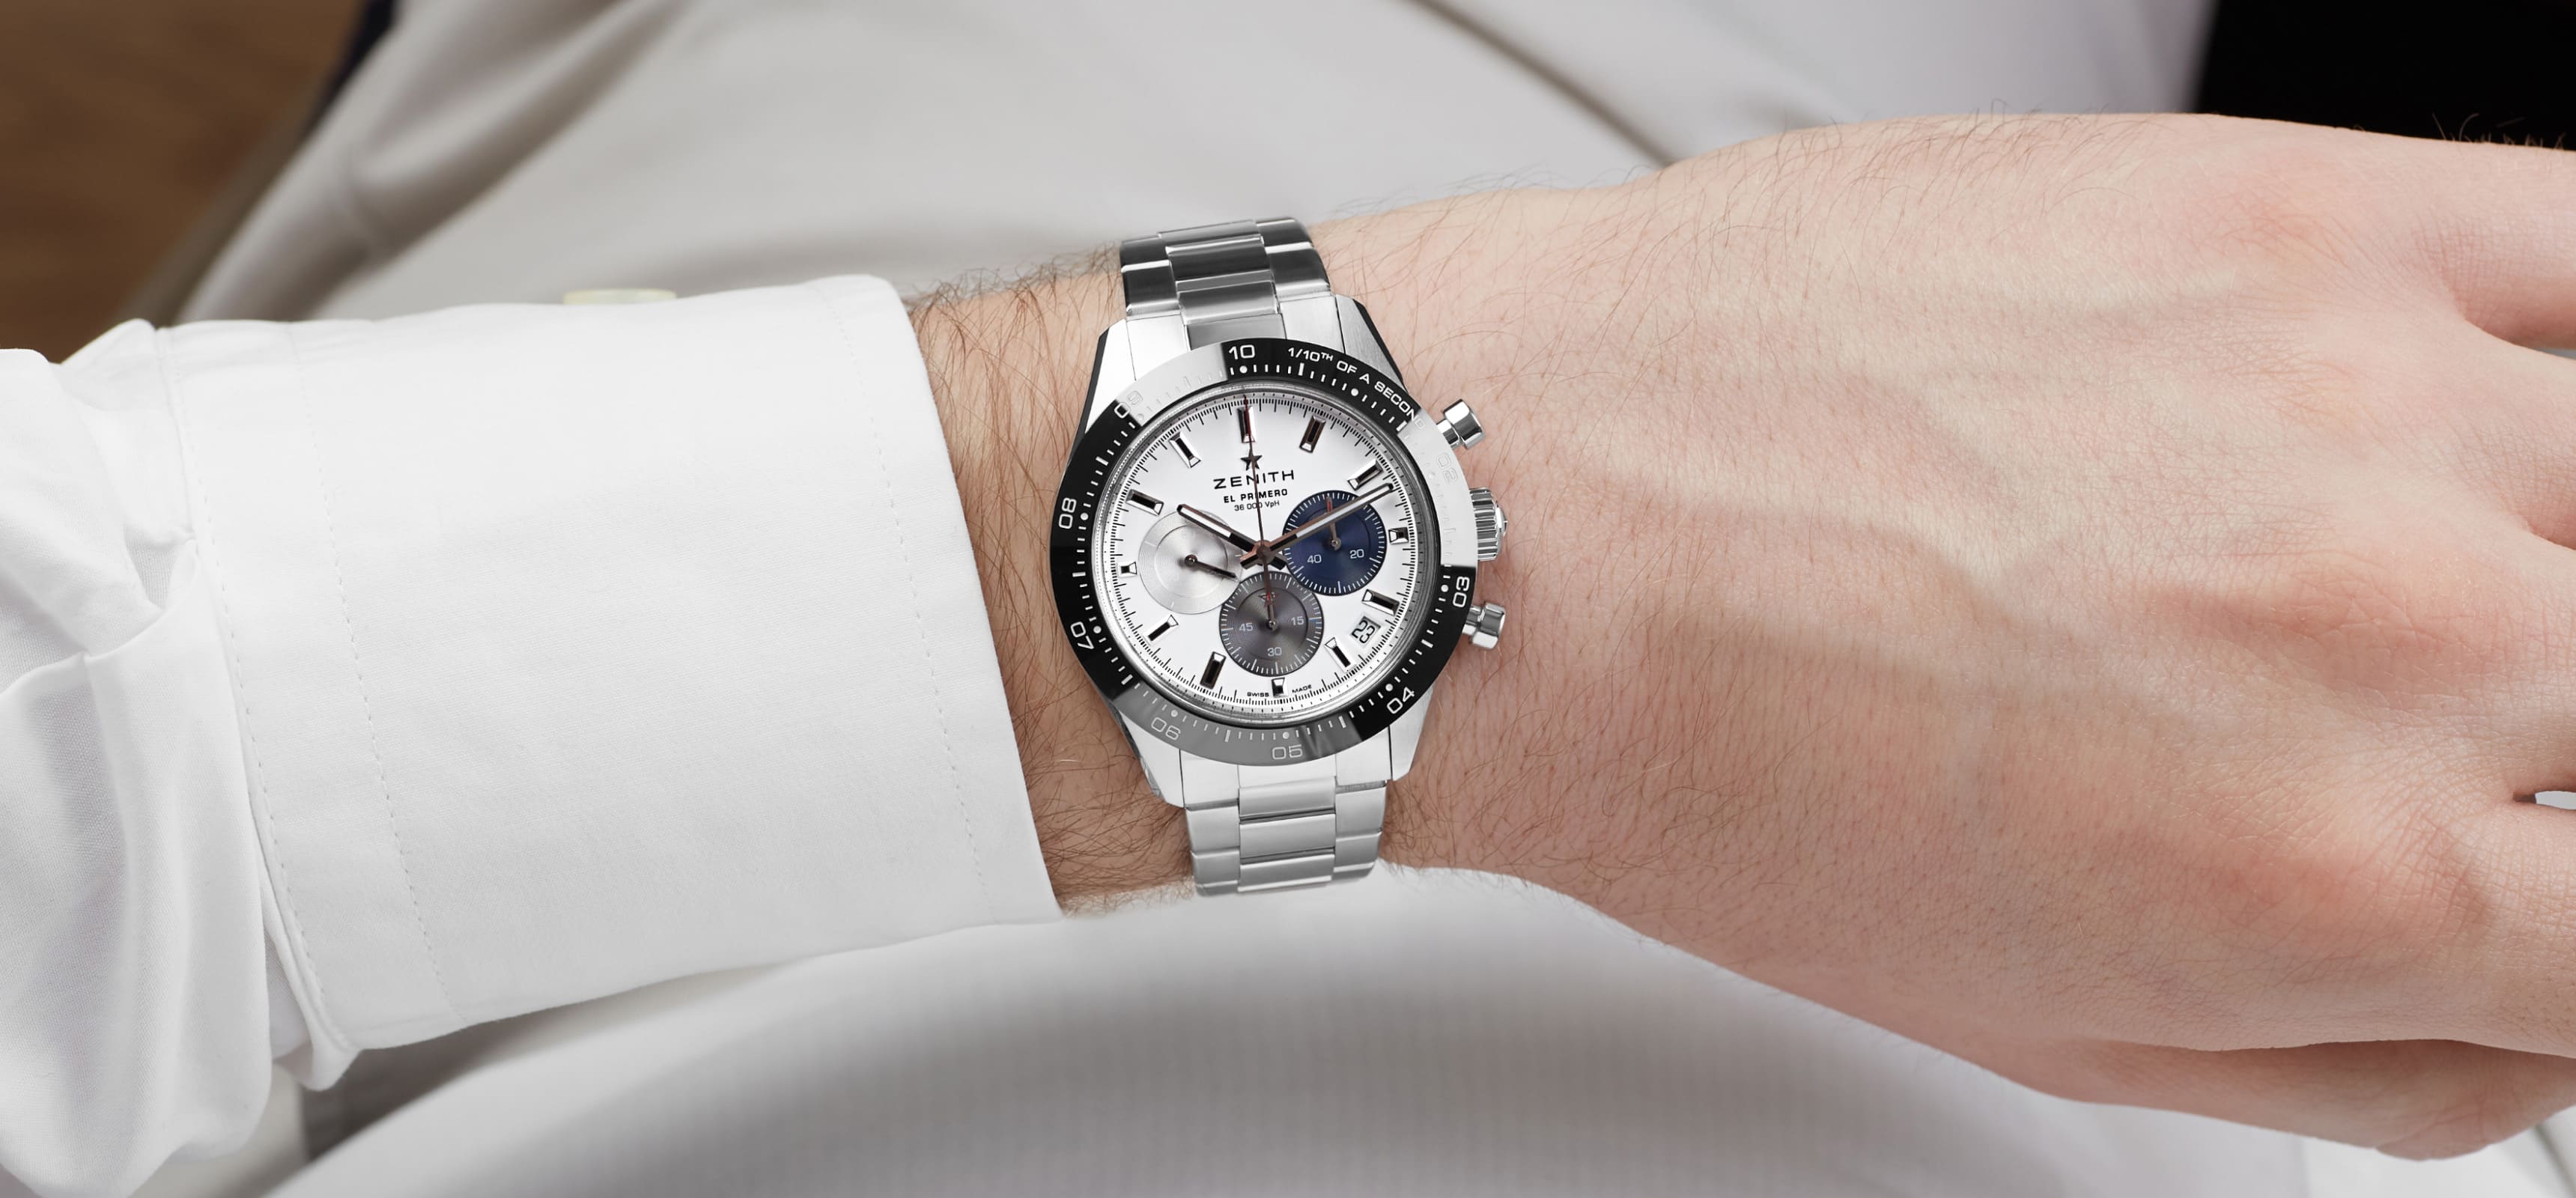 Серебряные, класса люкс часы на мужской руке. Богатый и светлый дизайн бренда Watch approach.